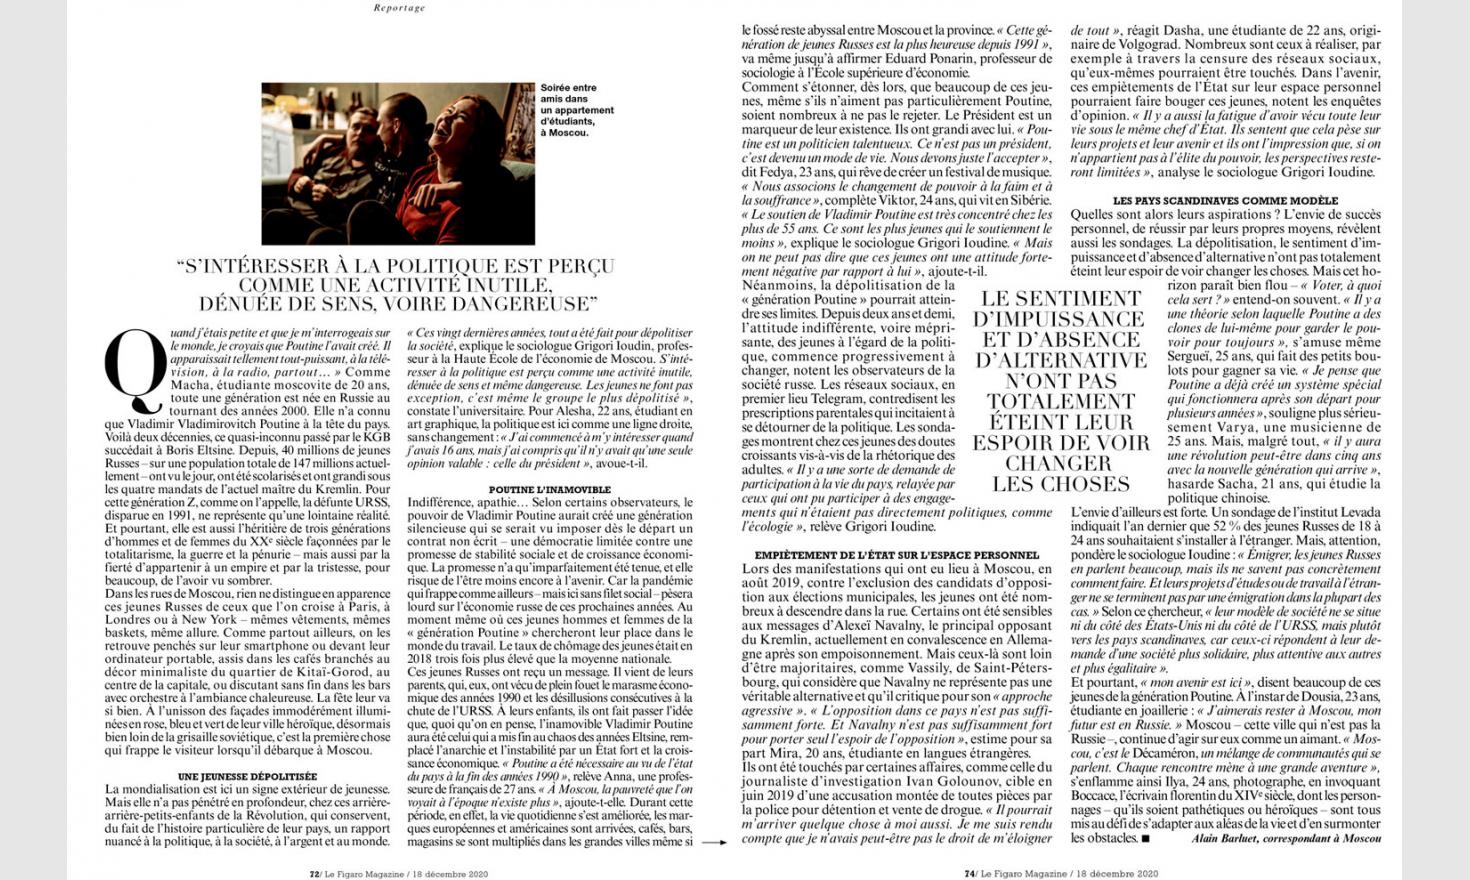 Figaro Magazine. Generation Poutine